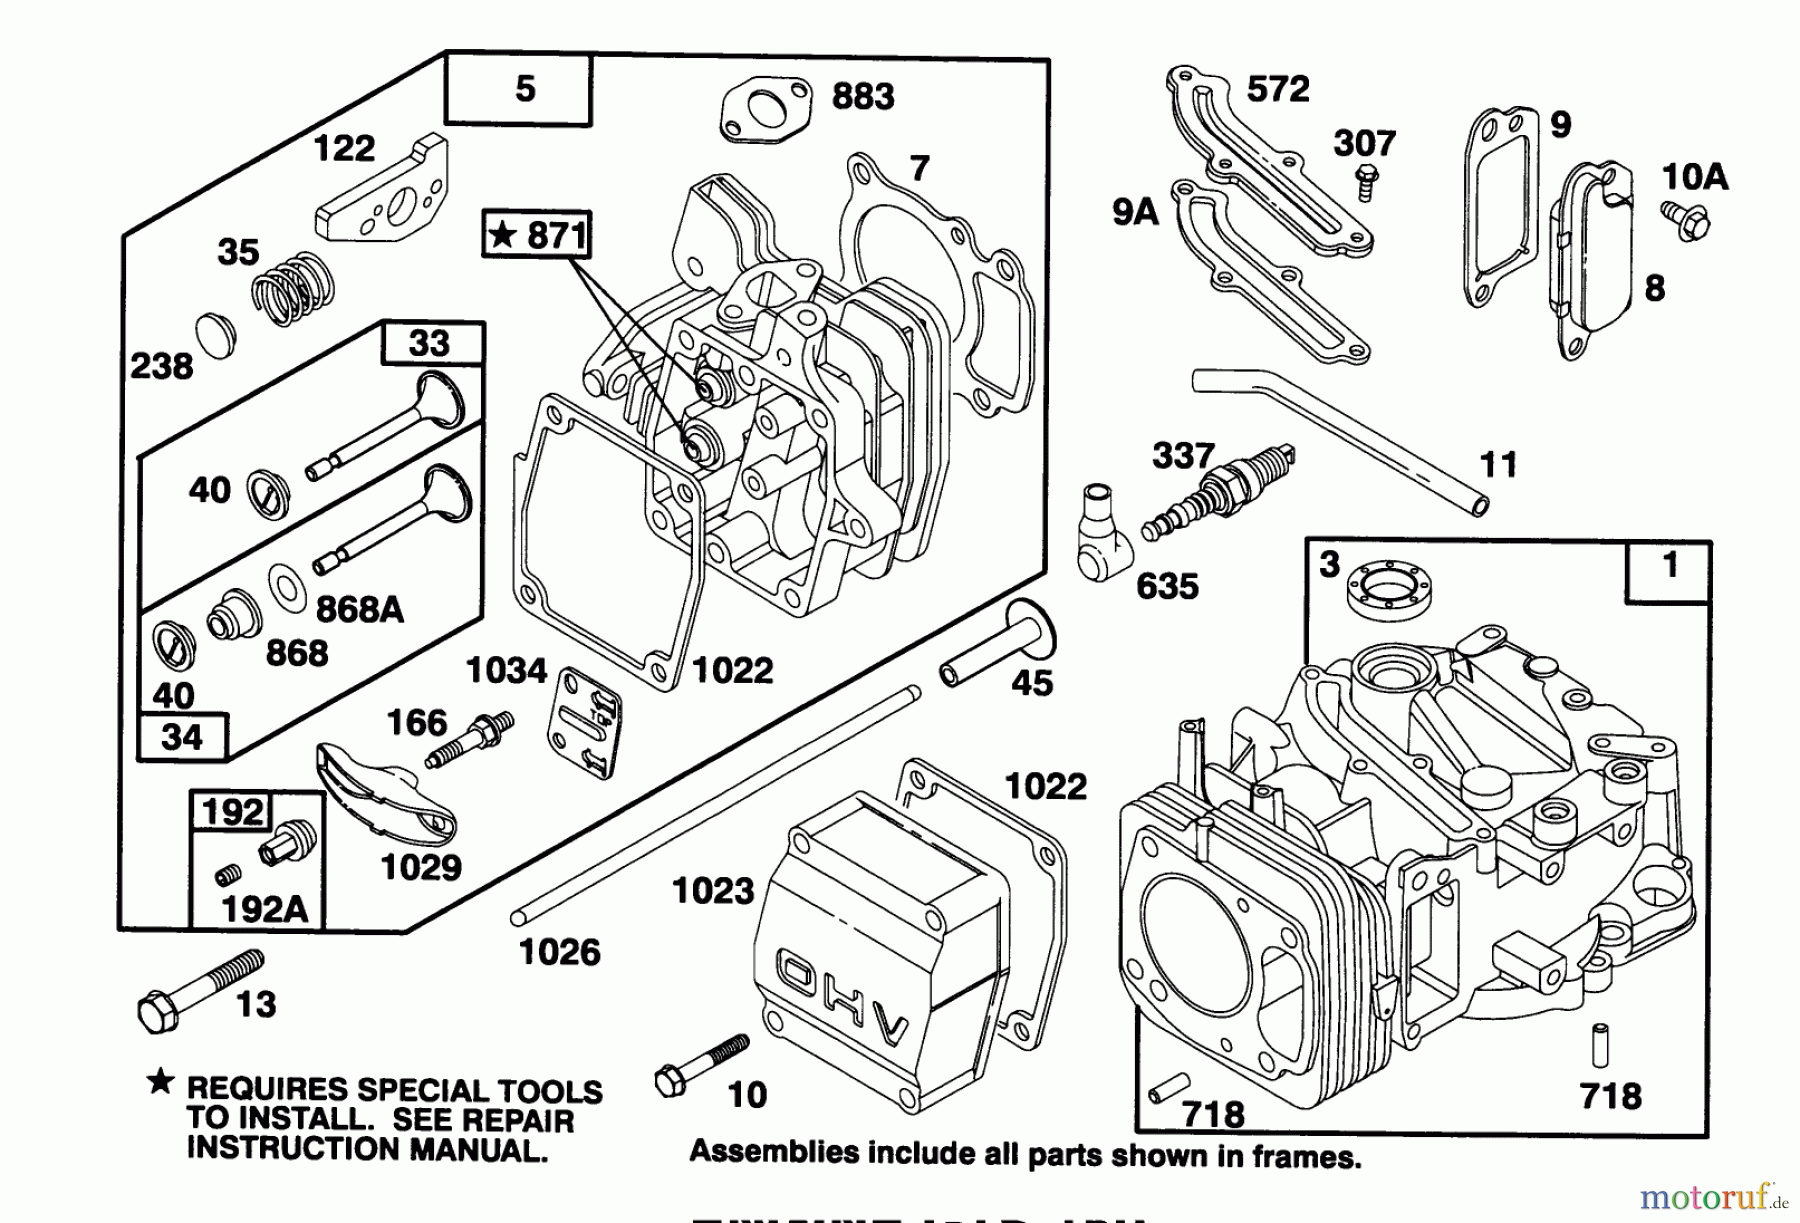  Toro Neu Mowers, Walk-Behind Seite 2 26630B - Toro Lawnmower, 1994 (4900001-4999999) ENGINE GTS 150 #1